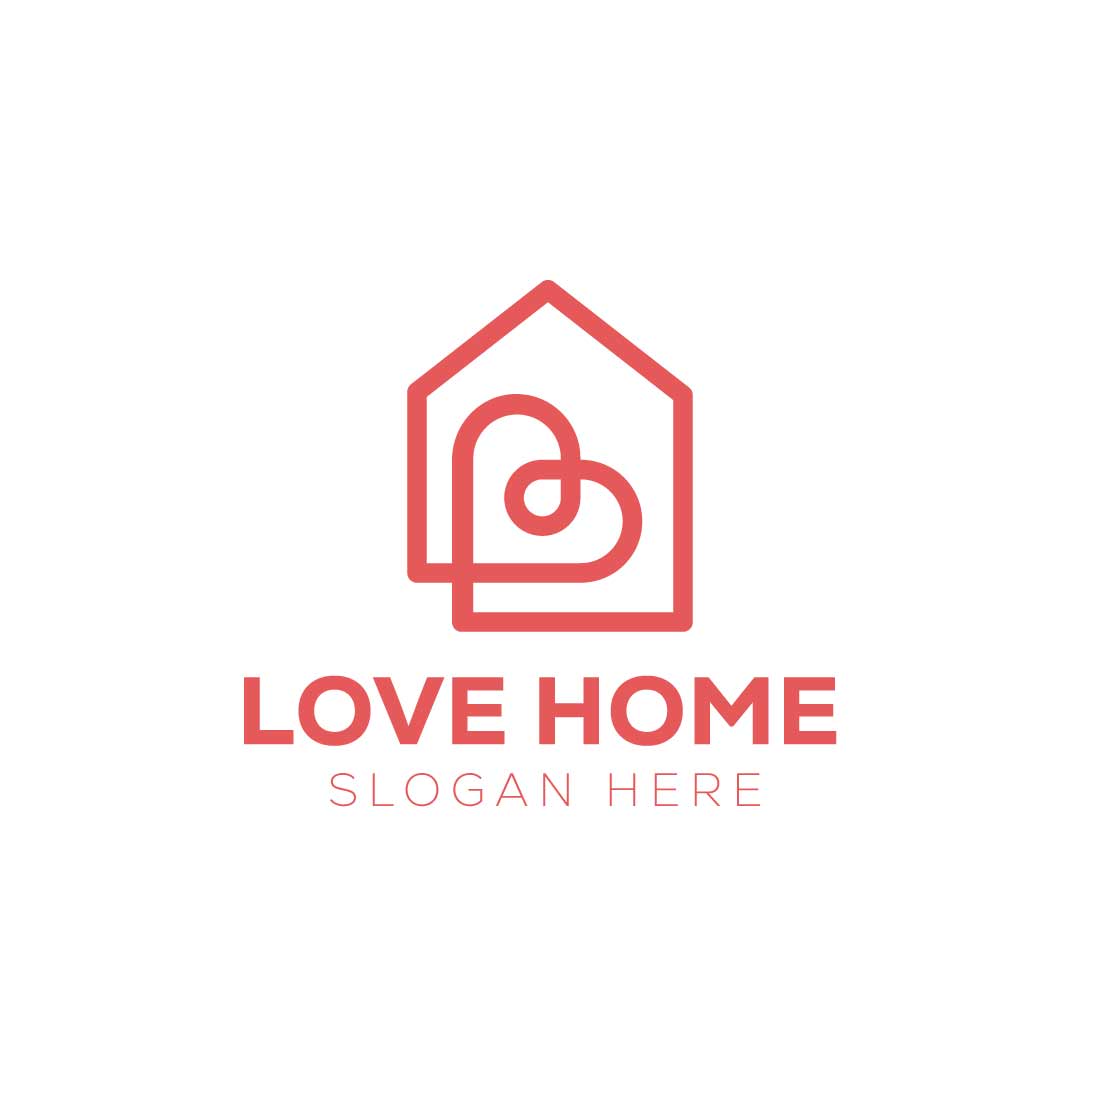 Creative Home Logo Love House logo design preview image.